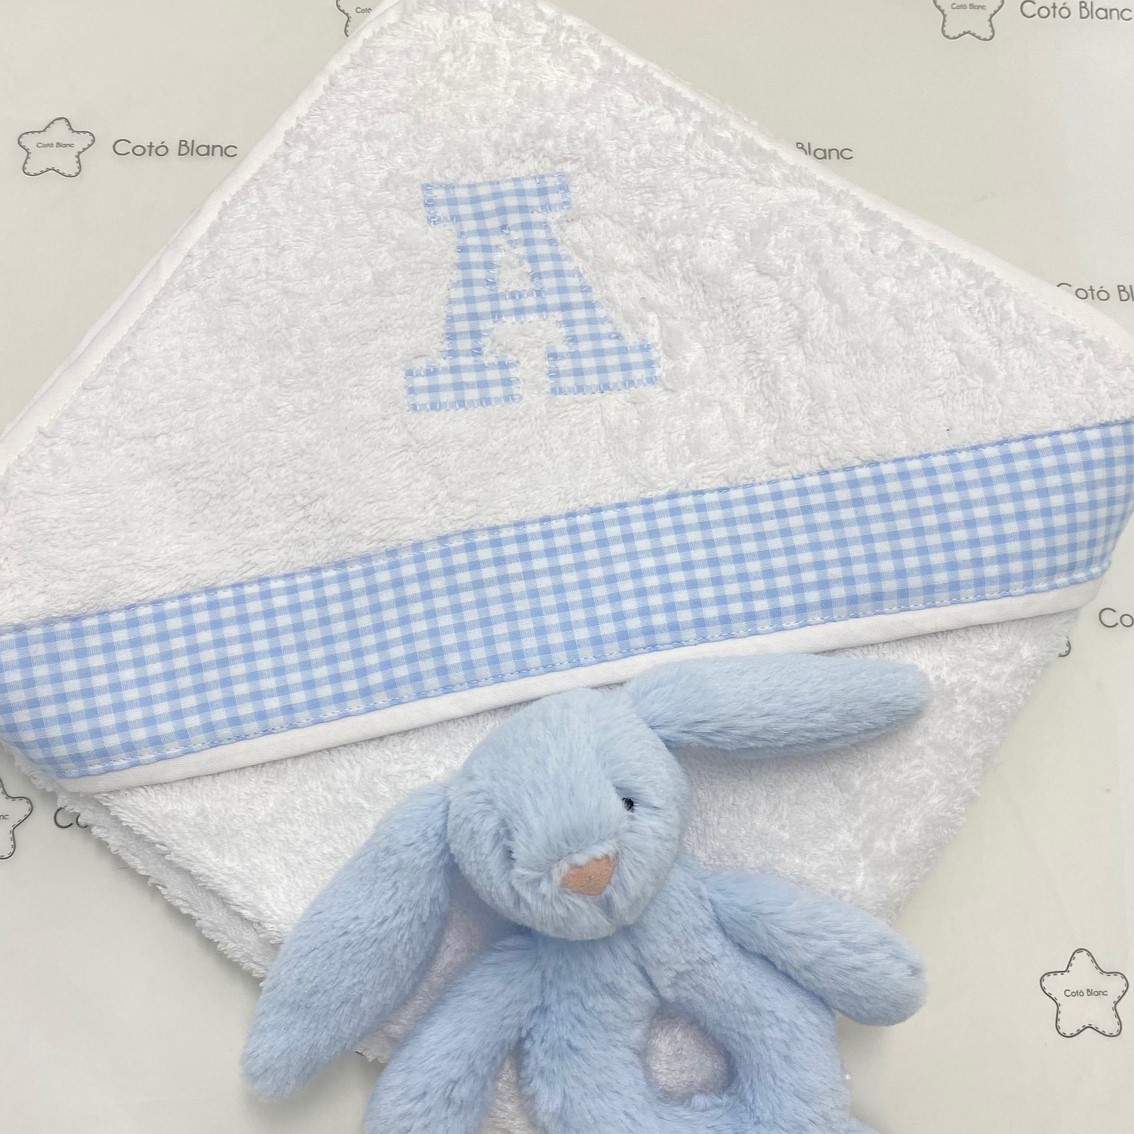 Capa de baño para bebé personalizable Blancheporte - Venca - 077724